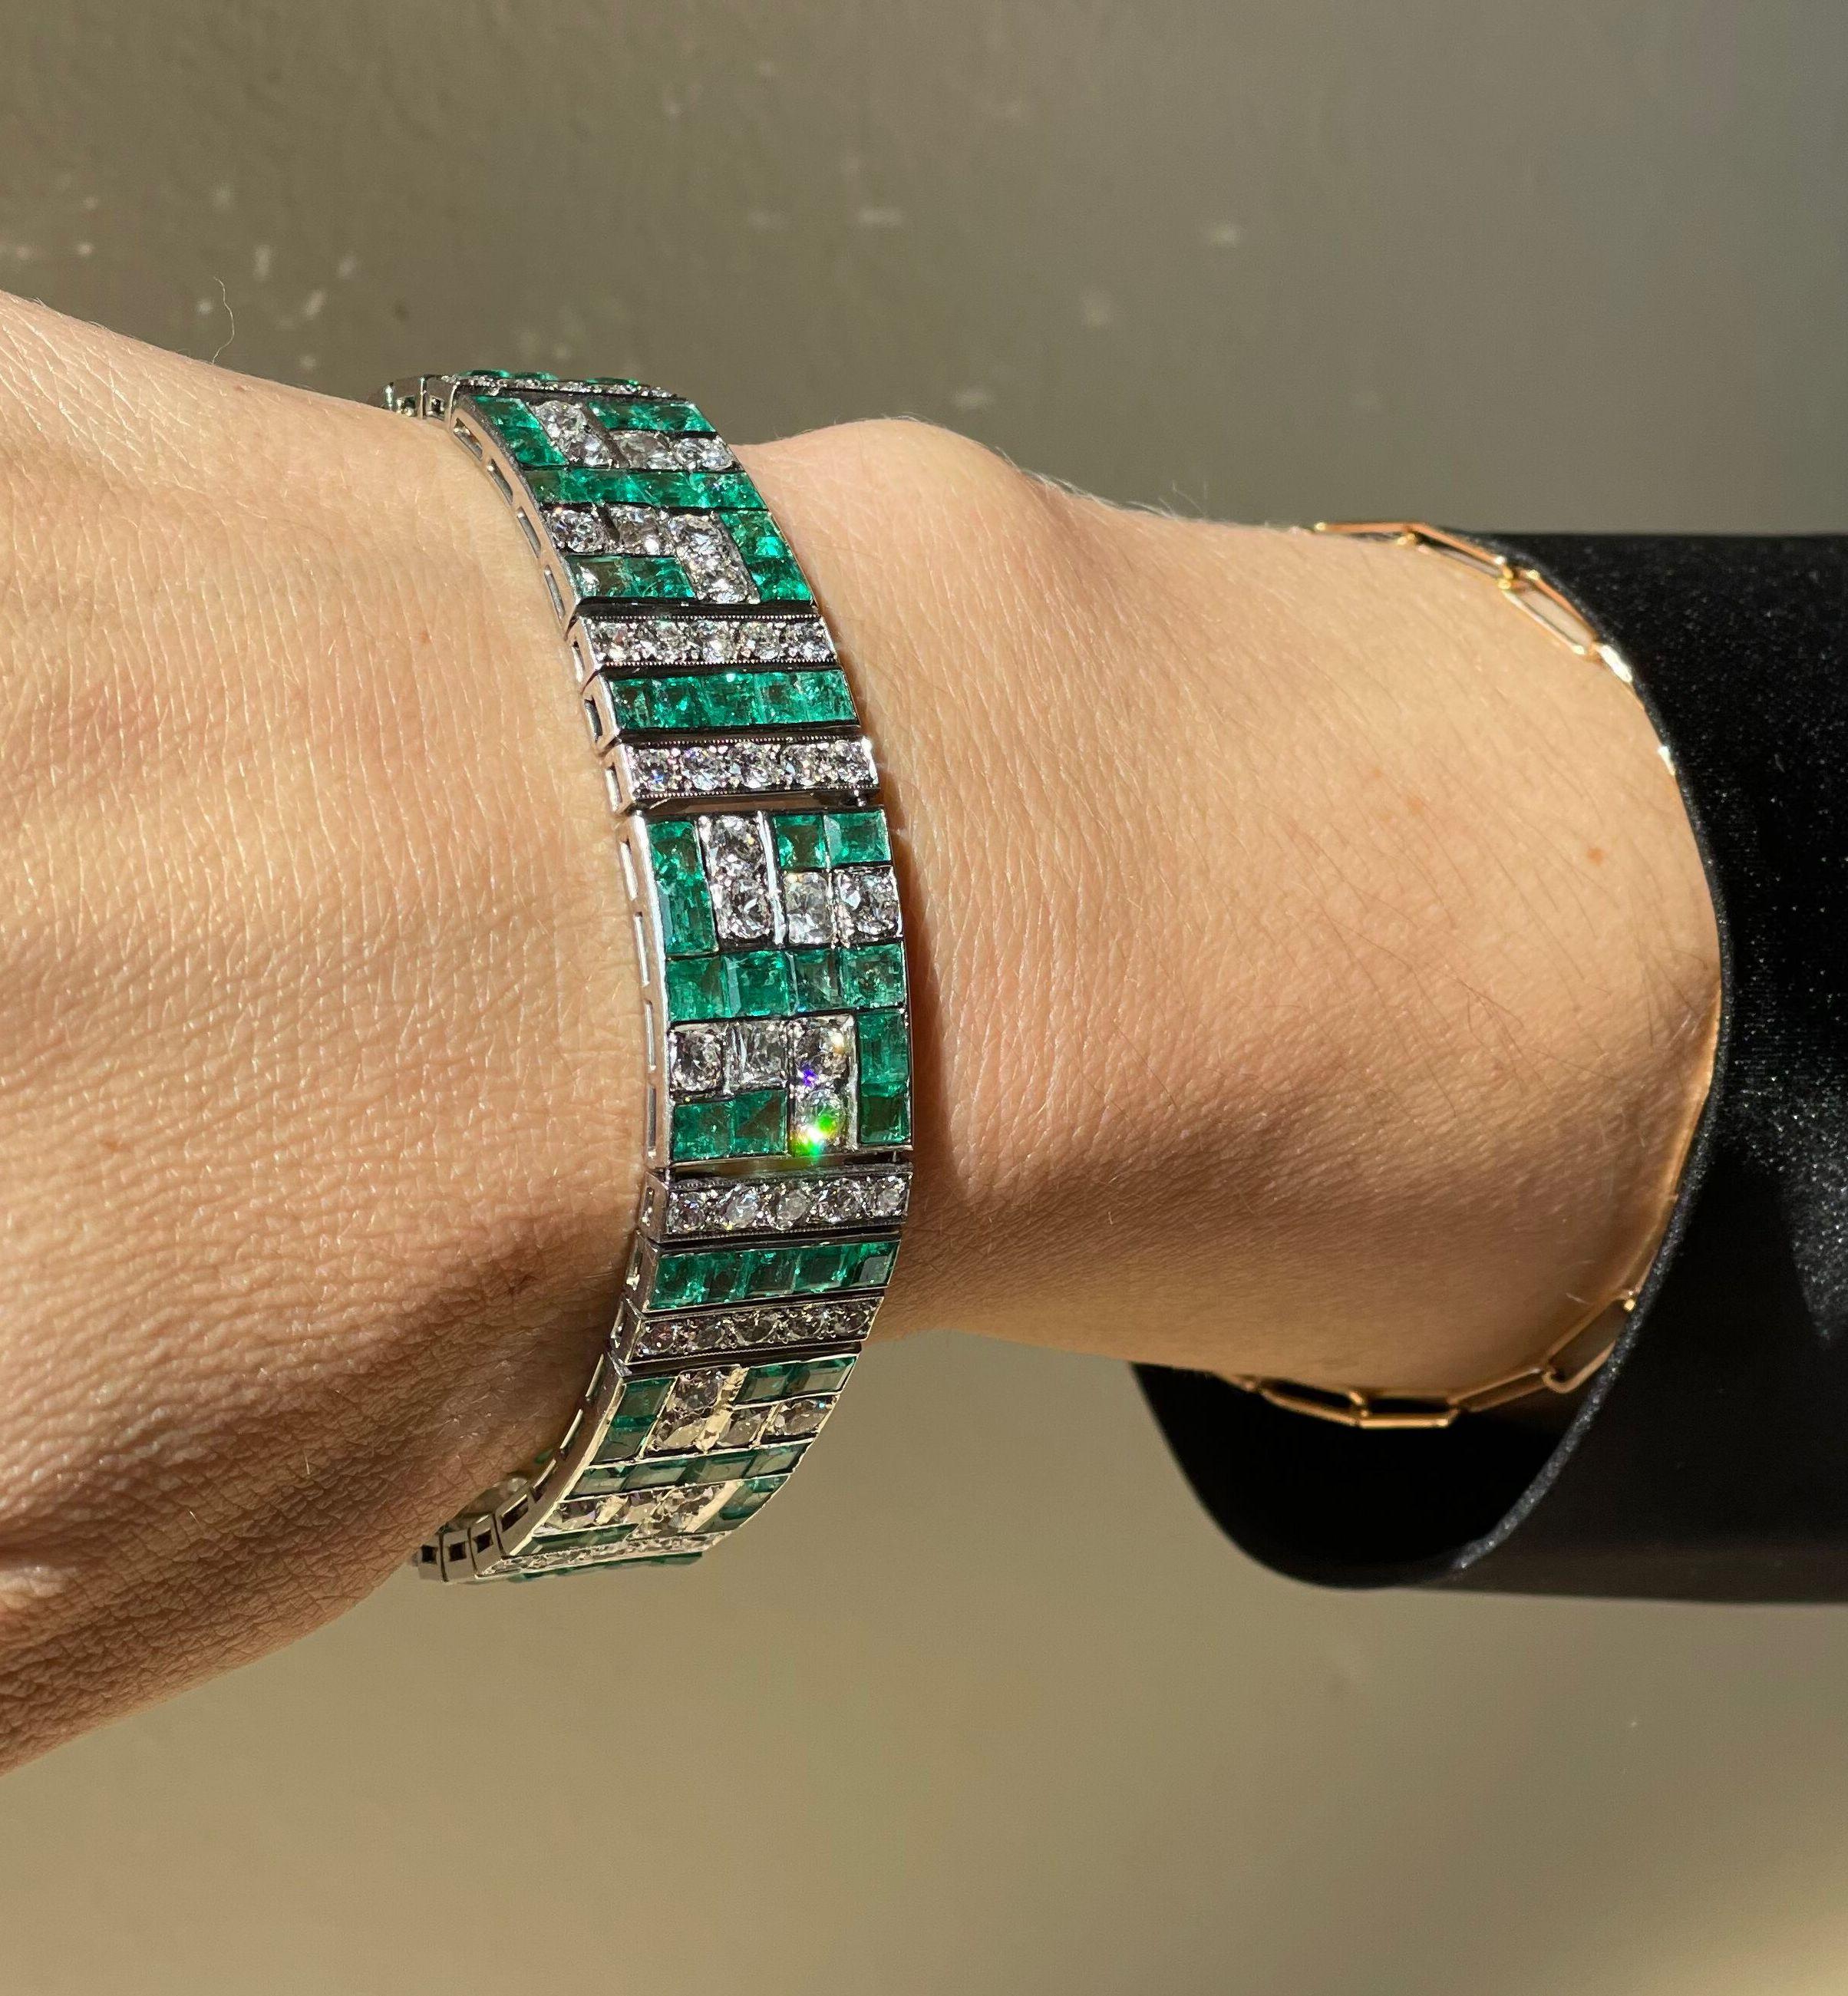 Platinarmband im Art-déco-Stil der 1930er Jahre, verziert mit leuchtenden Smaragden und etwa 11 Karat I/SI-Diamanten. Der Armreif ist 7 1/8